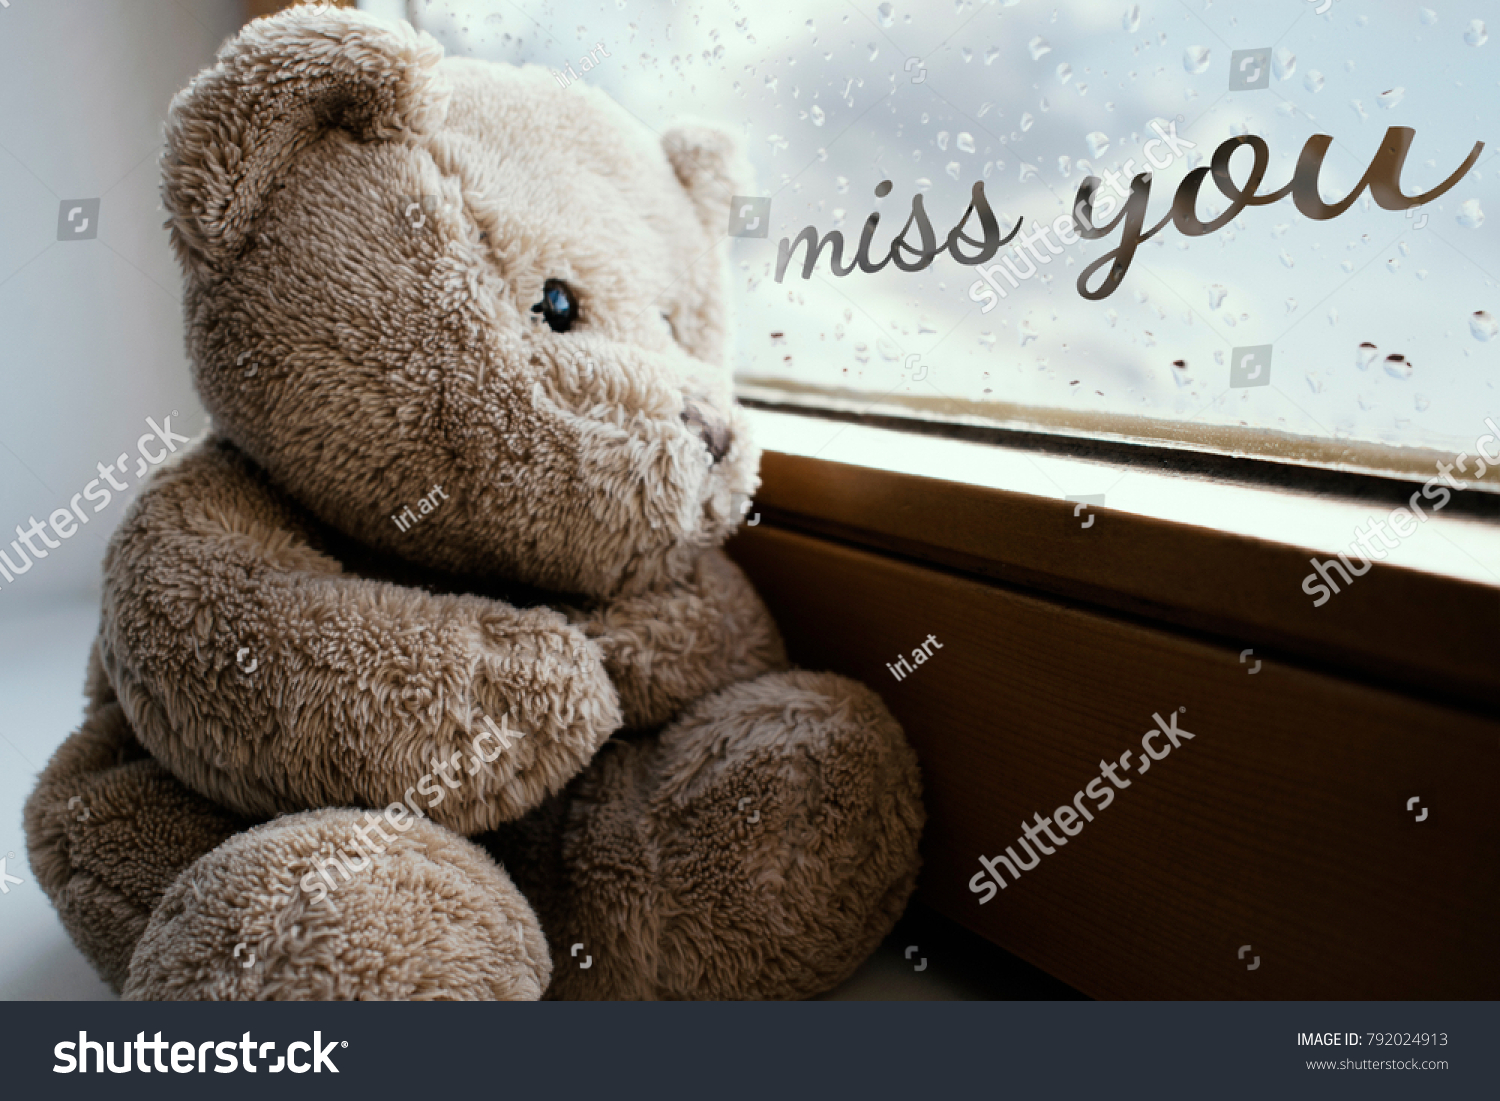 i miss you teddy bear